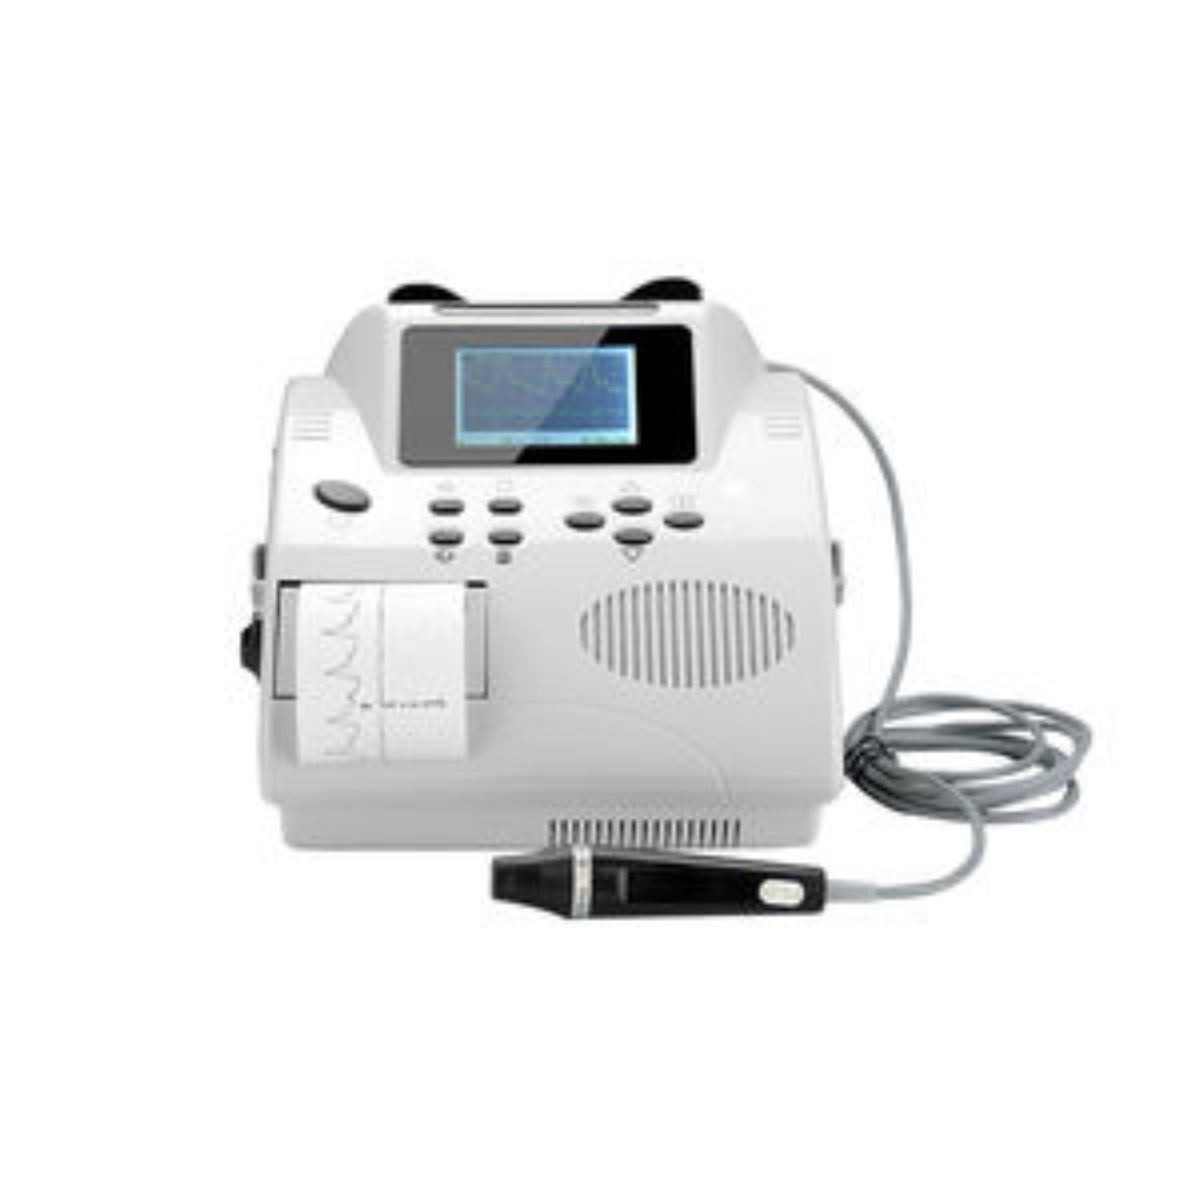 Ultrasonic Vascular Doppler Detector Bi